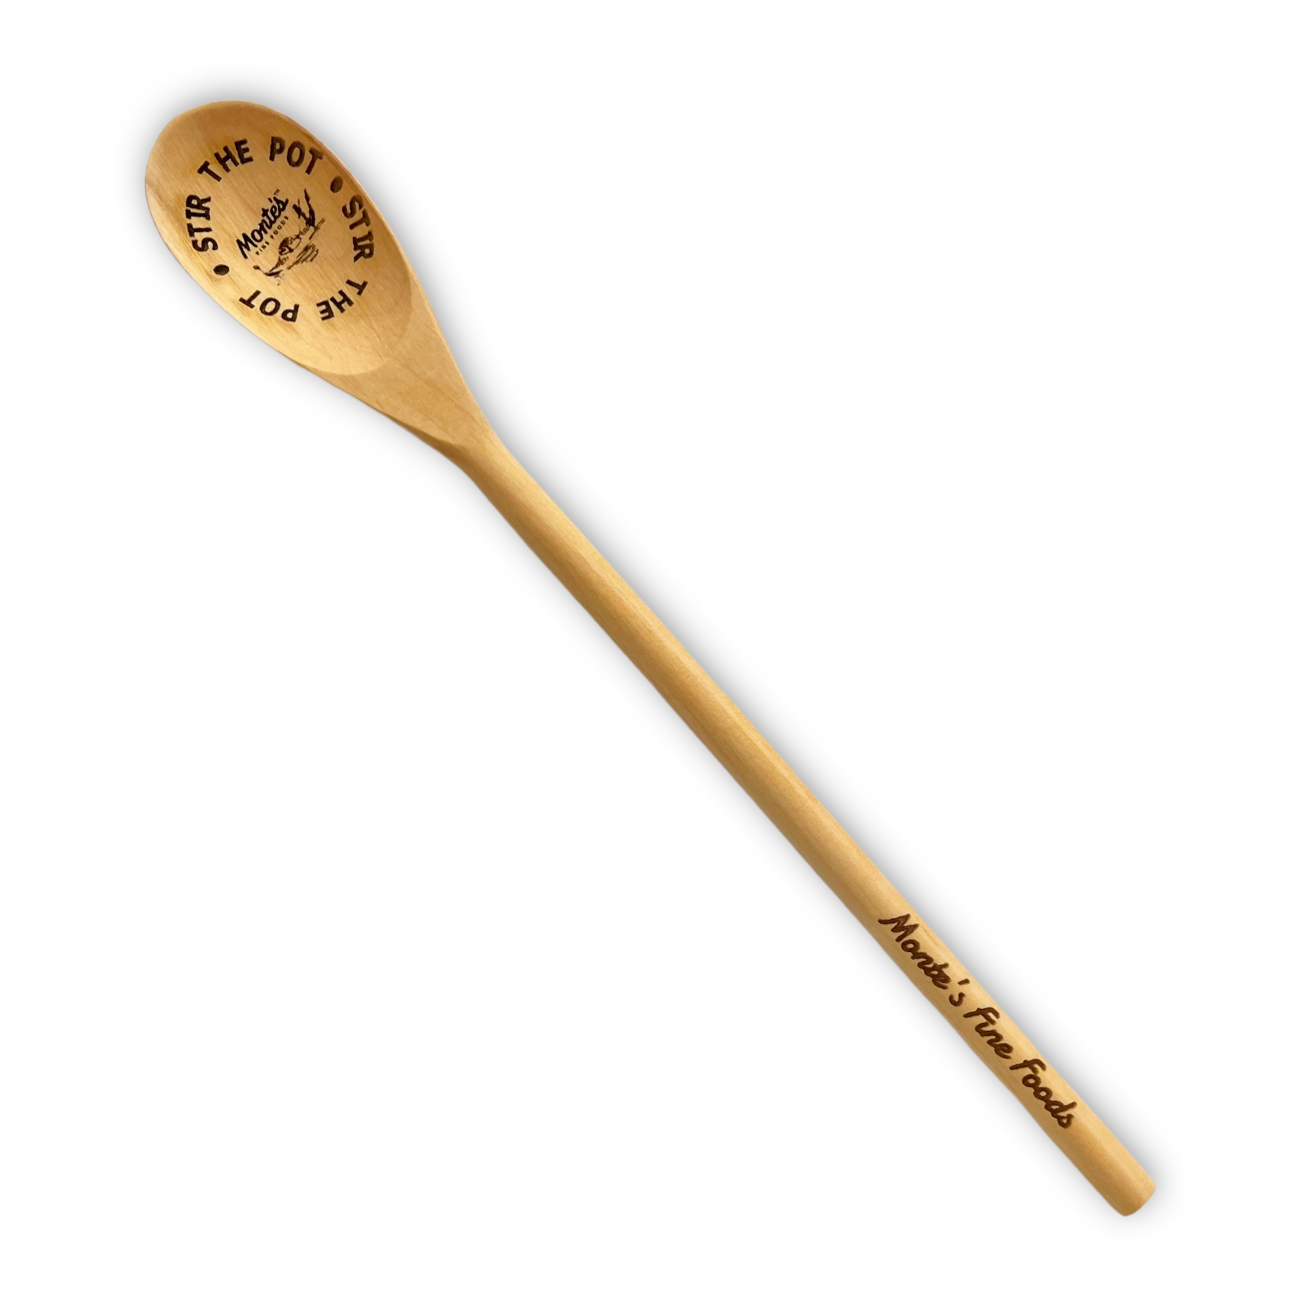 "Spoon Me" Rest & "Stir The Pot" Wooden Spoon Bundle